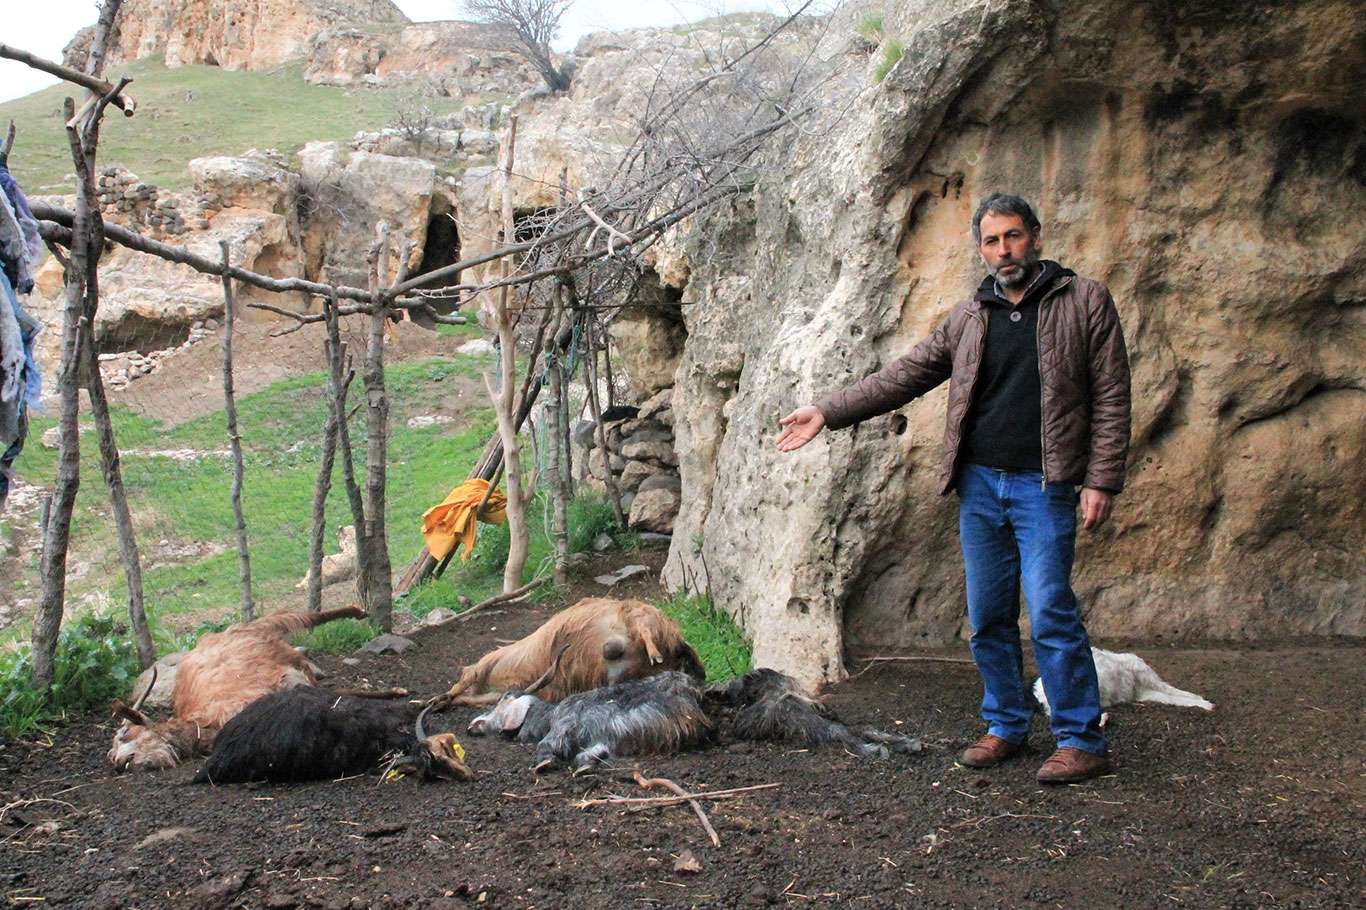 Kurtlar hayvan barınağına saldırdı: 25 keçi telef oldu